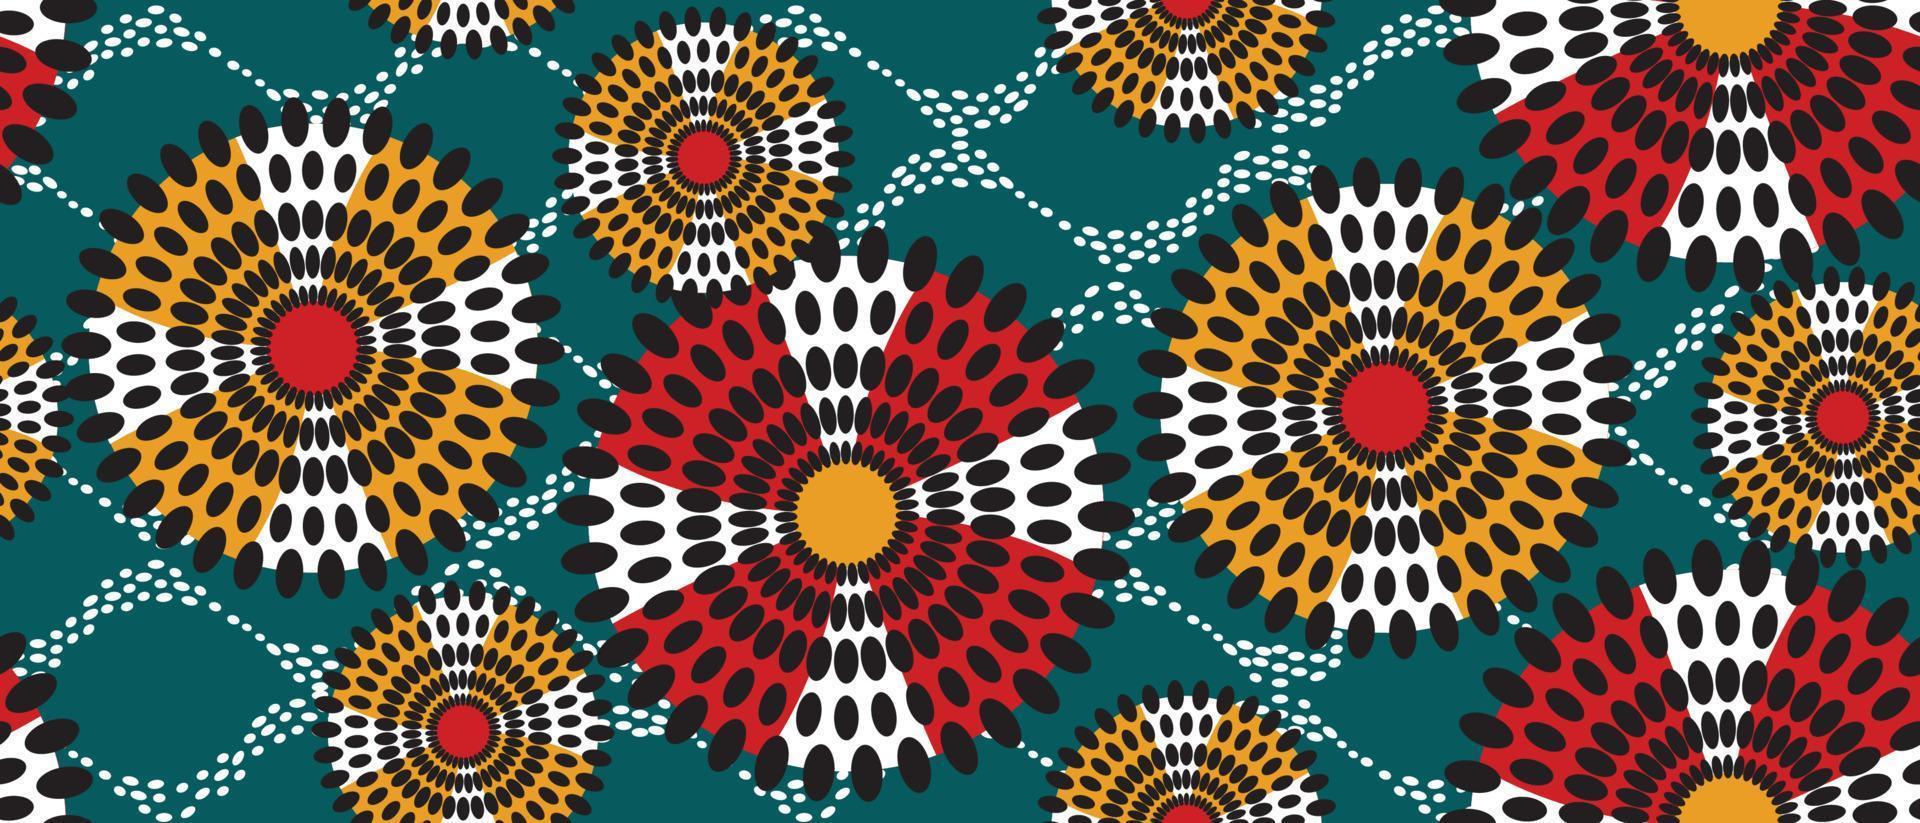 afrika 0008afrikaanse etnische traditionele groene patroon. naadloze mooie kitenge, chitenge-stijl. modevormgeving in kleurrijk. geometrische cirkel abstracte motief. bloemen ankara prints, Afrikaanse wax prints. vector